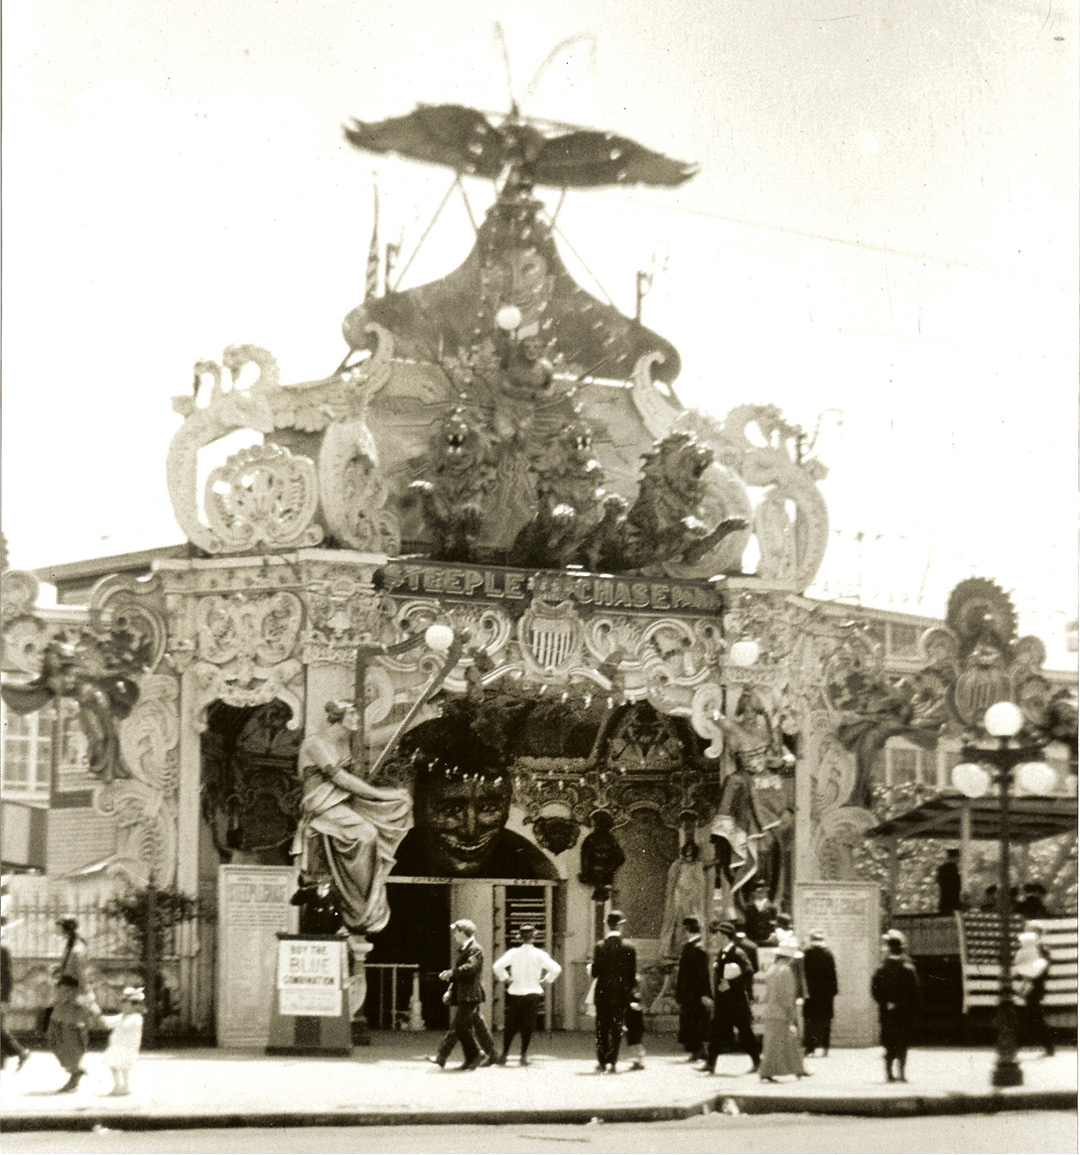 Eldorado-carousel-Facade-made-or-zinc-1912